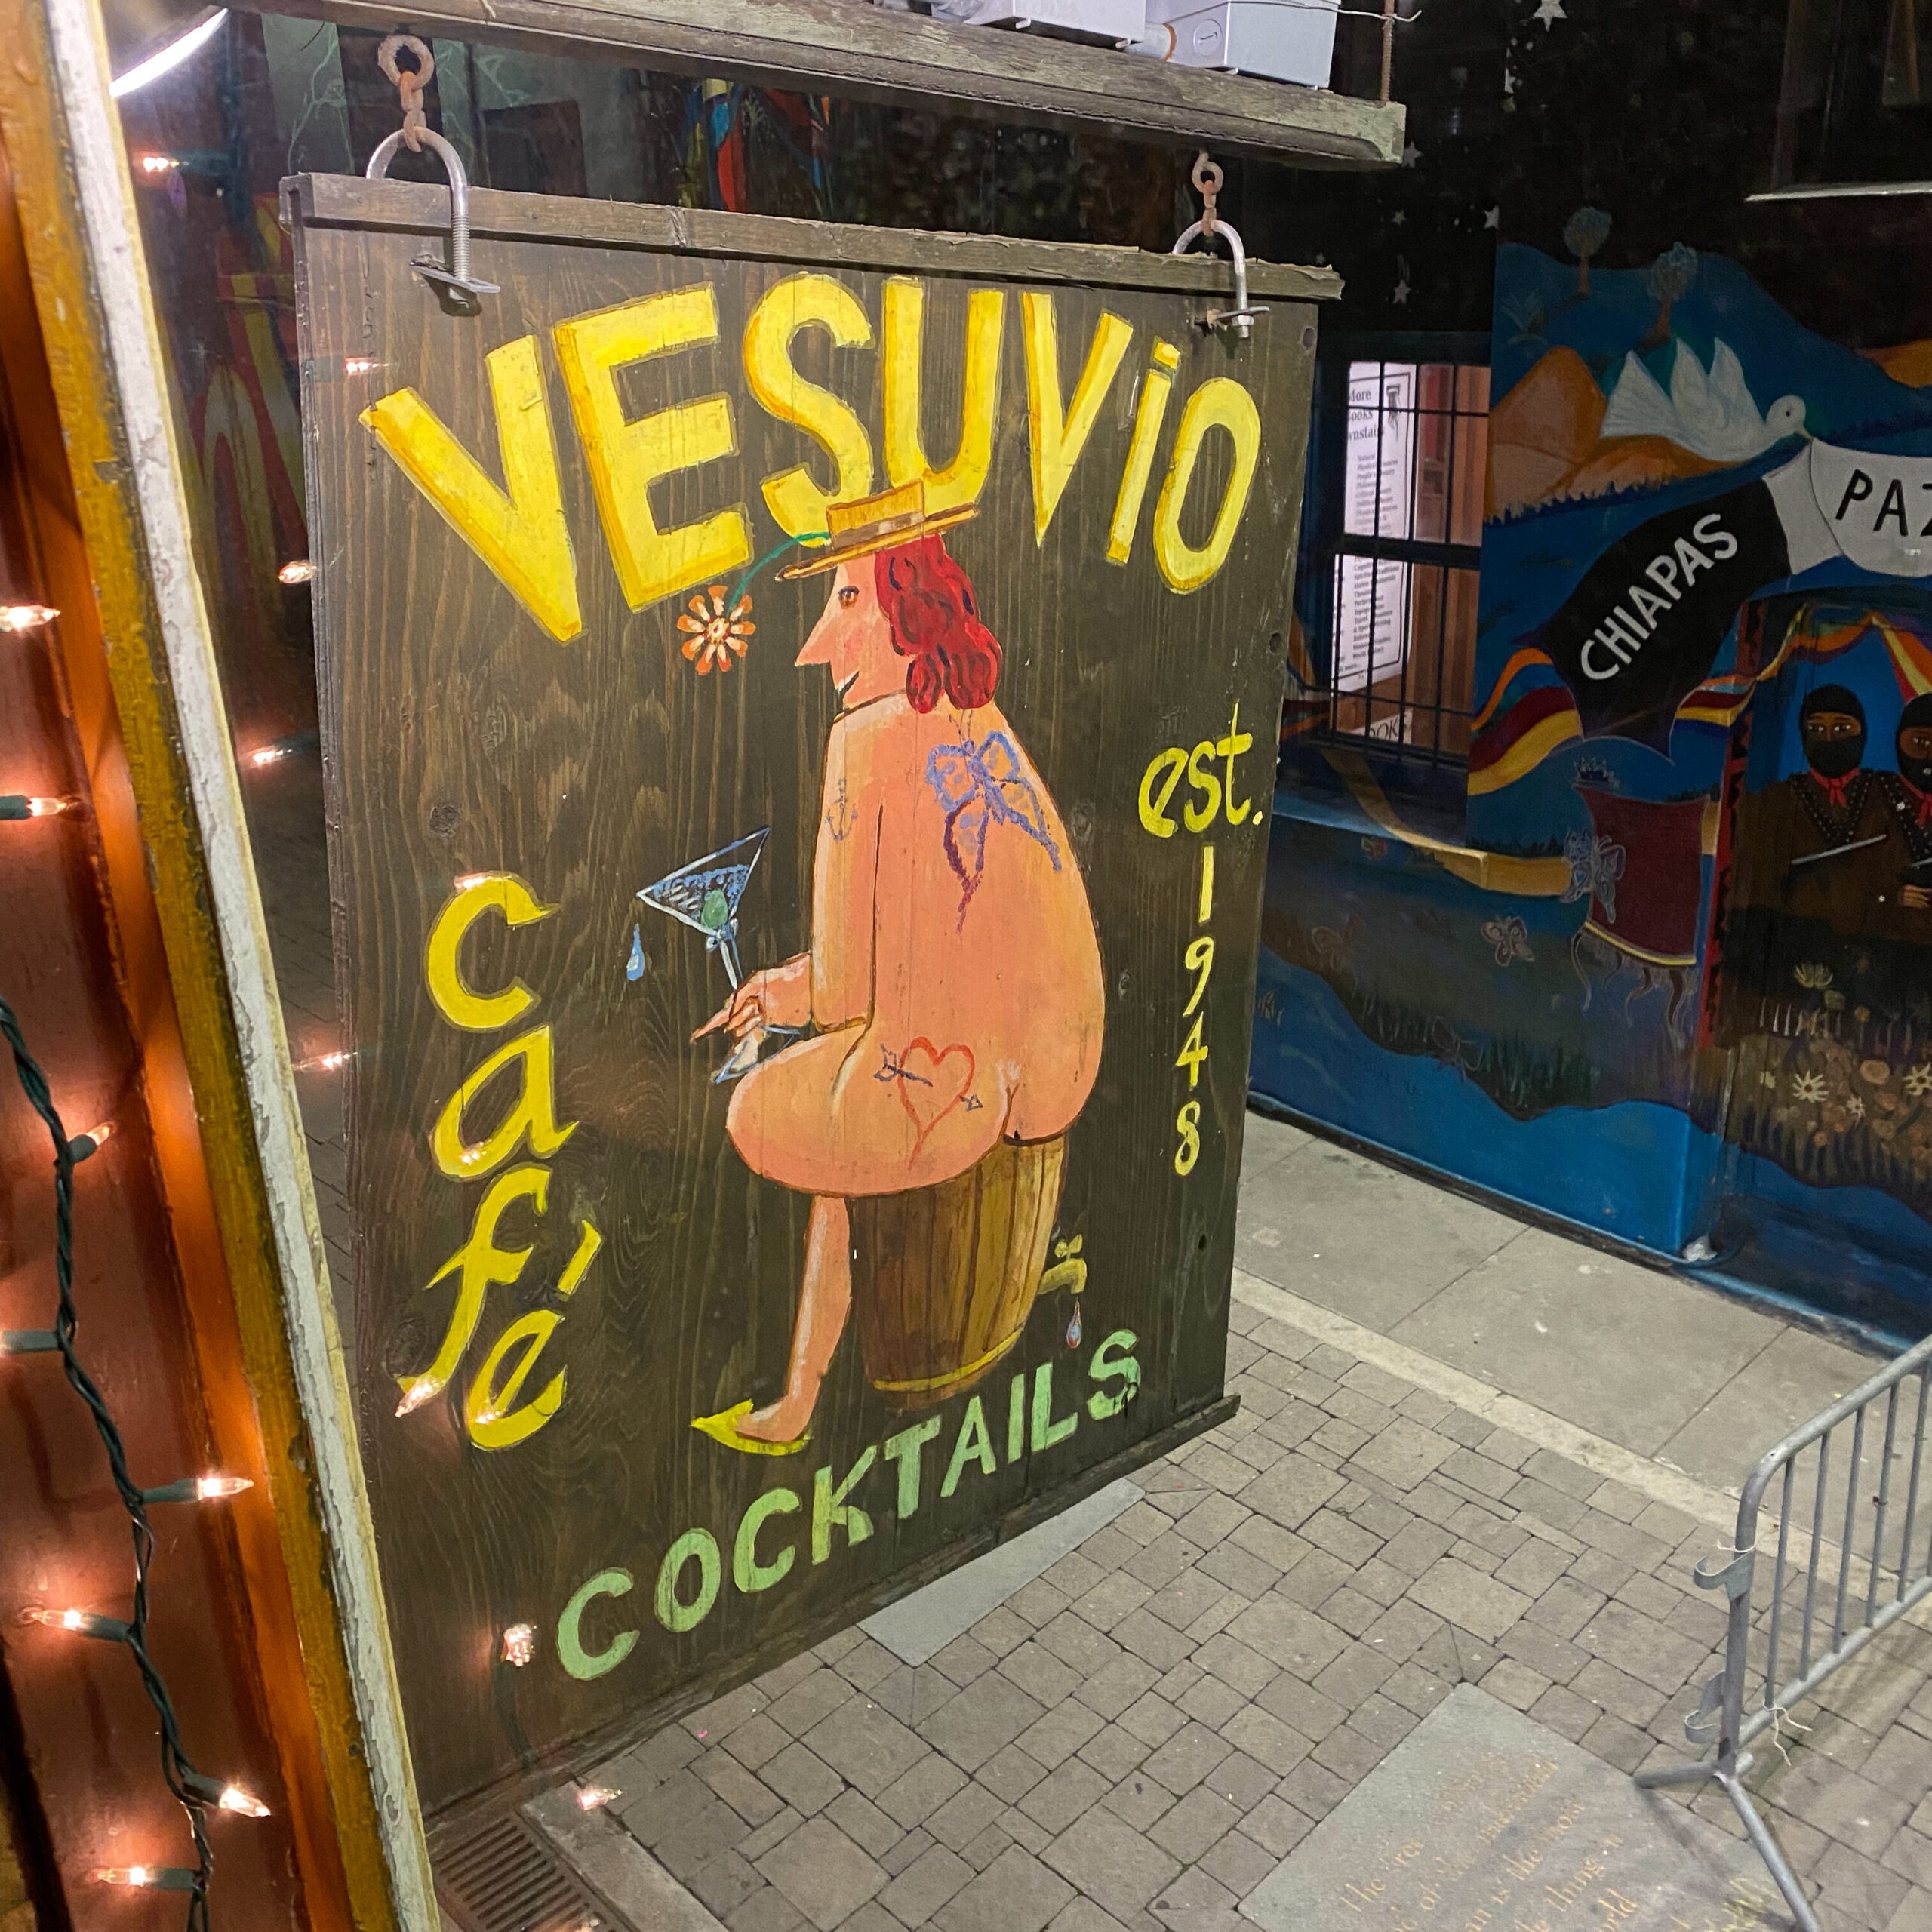 The Vesuvio Cafe sign.